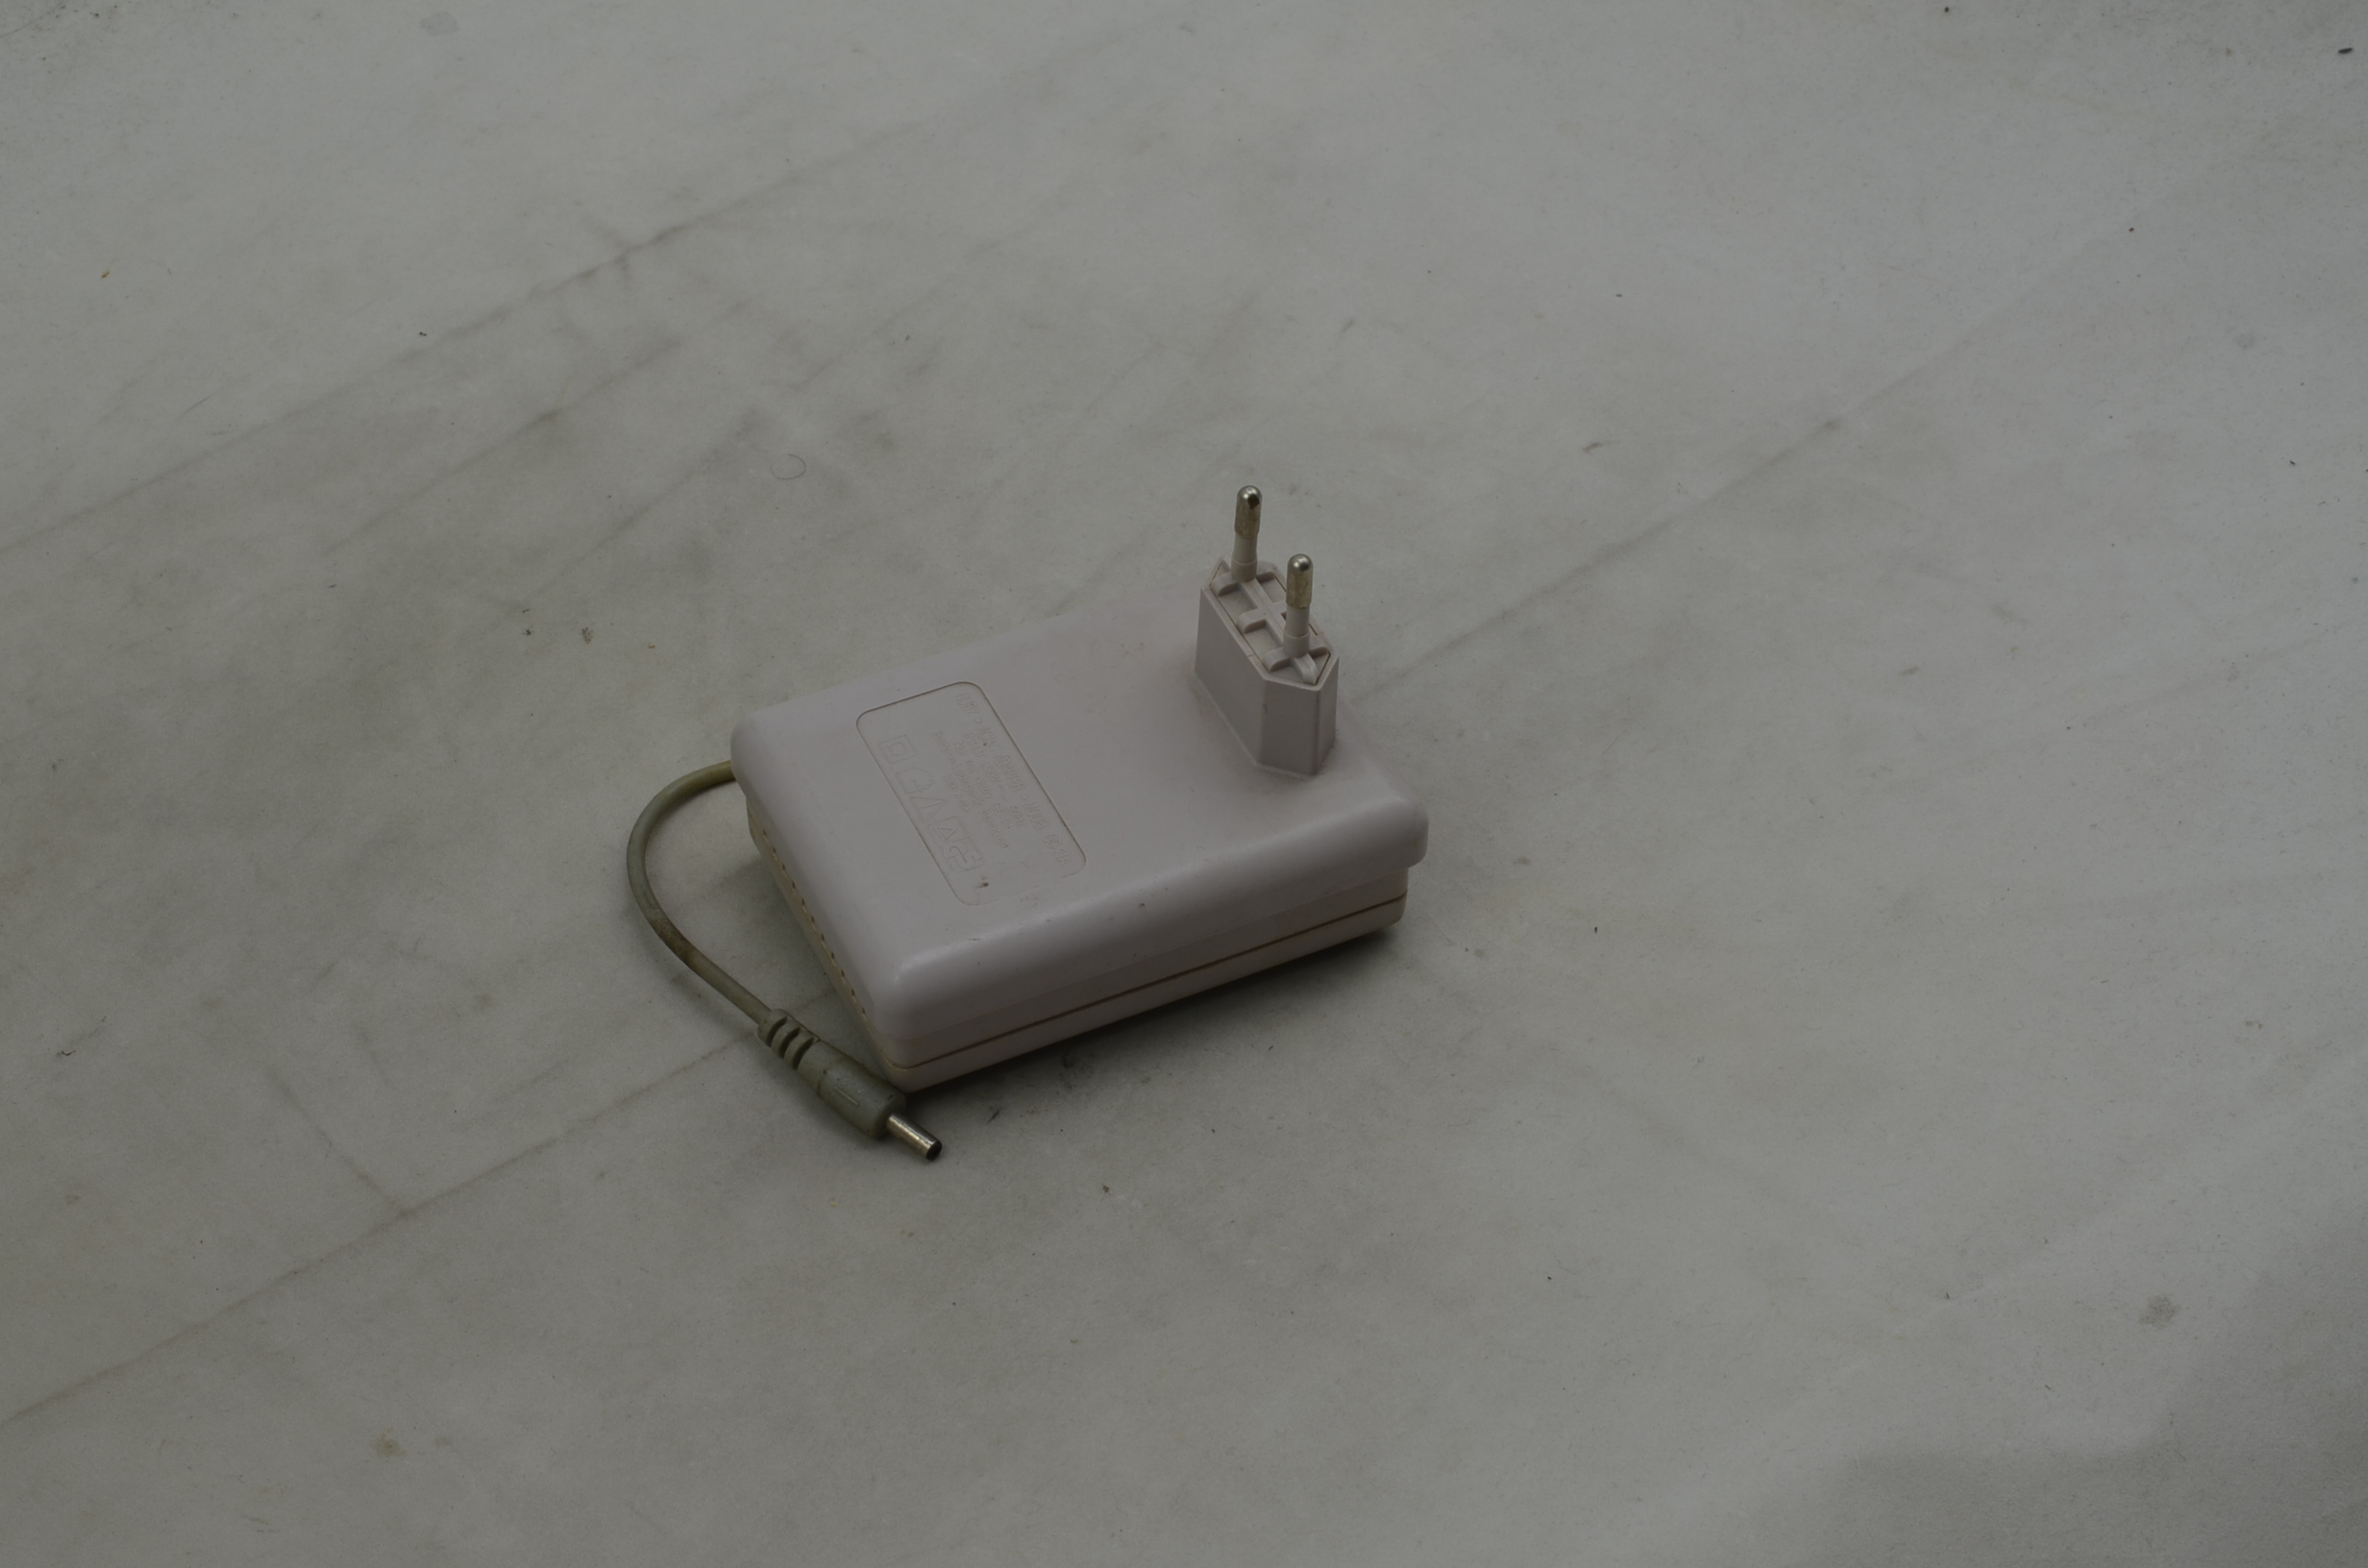 Produktbild von Nuby Rechargable Battery Pack für Game Boy